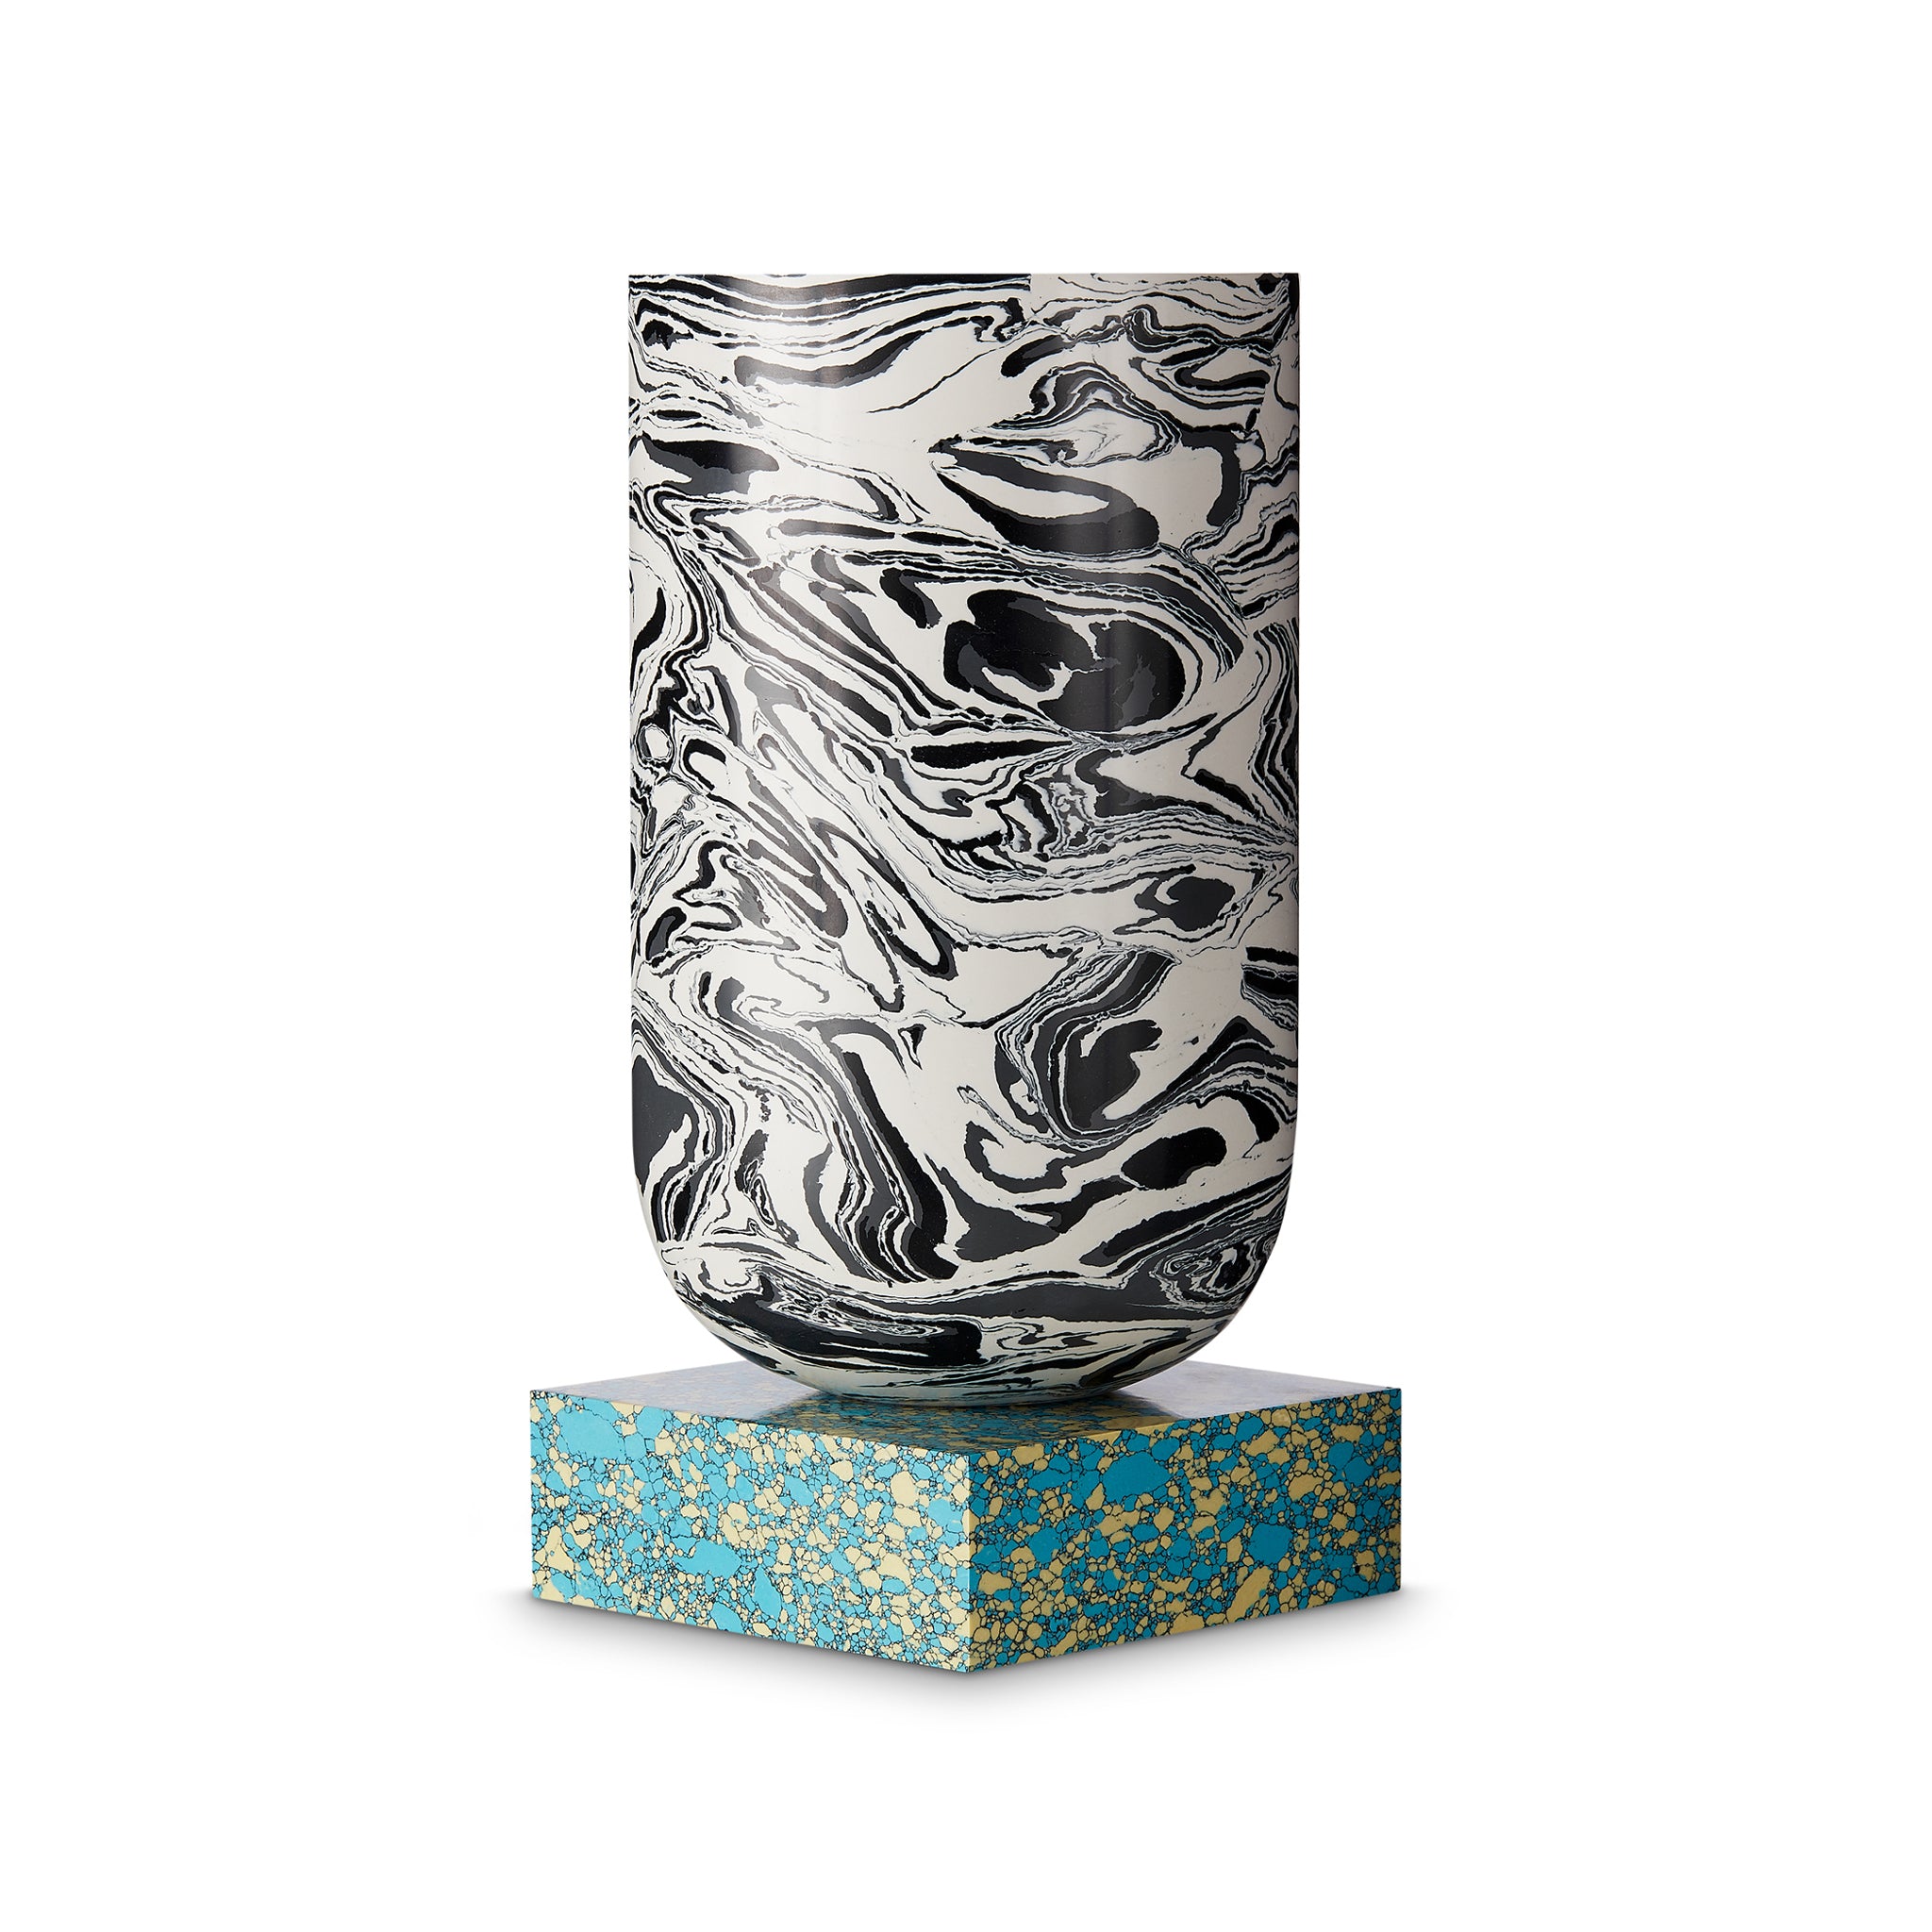 Swirl Vase by Tom Dixon